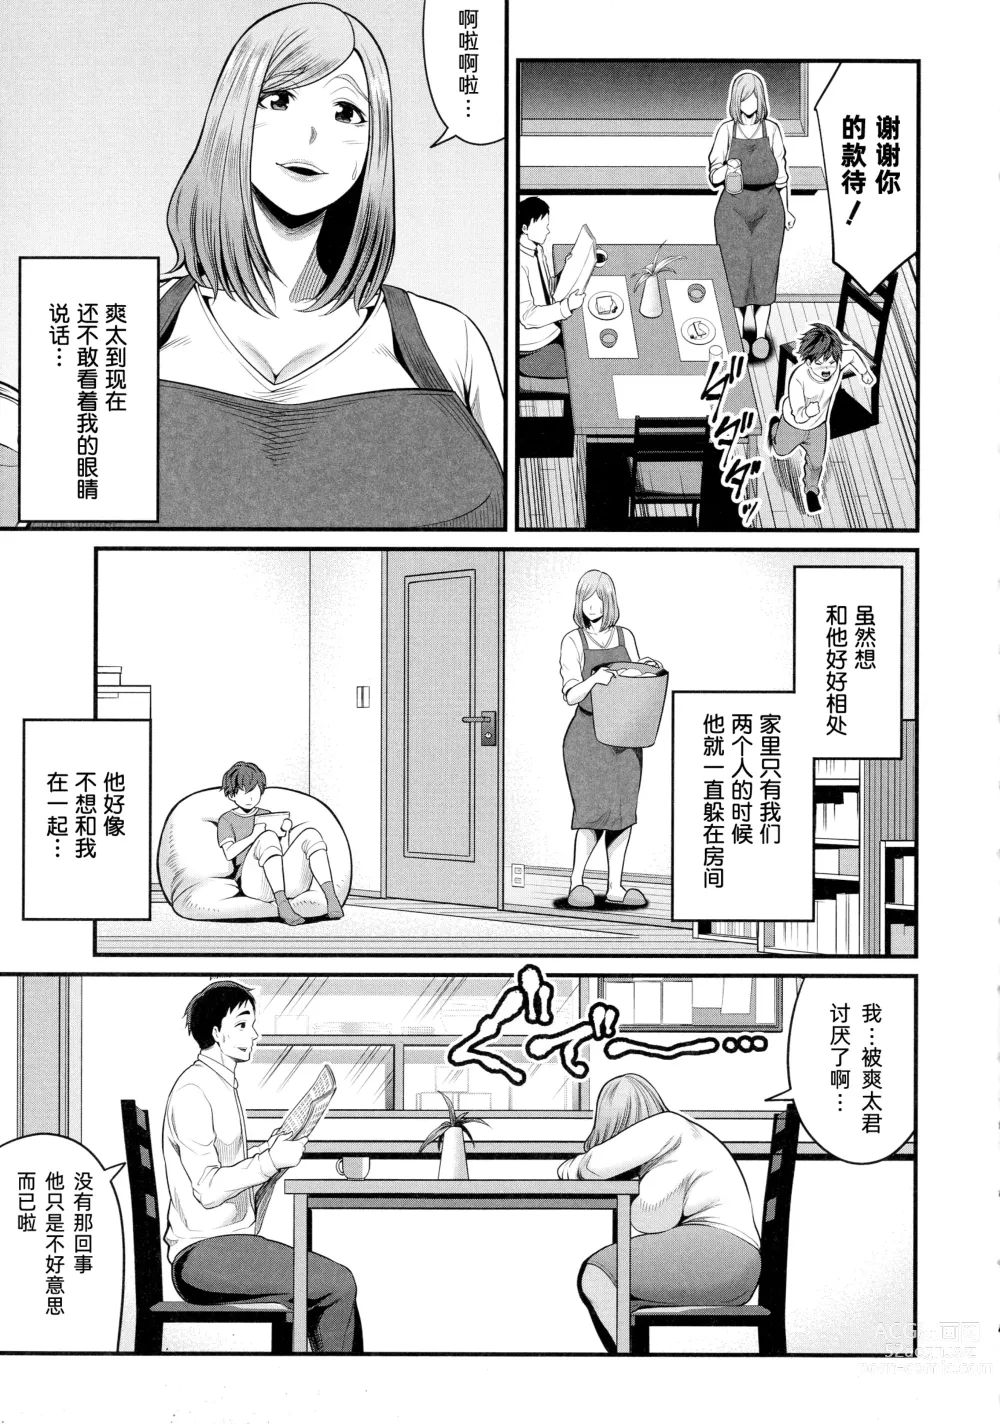 Page 3 of manga Okaa-san to Asobo